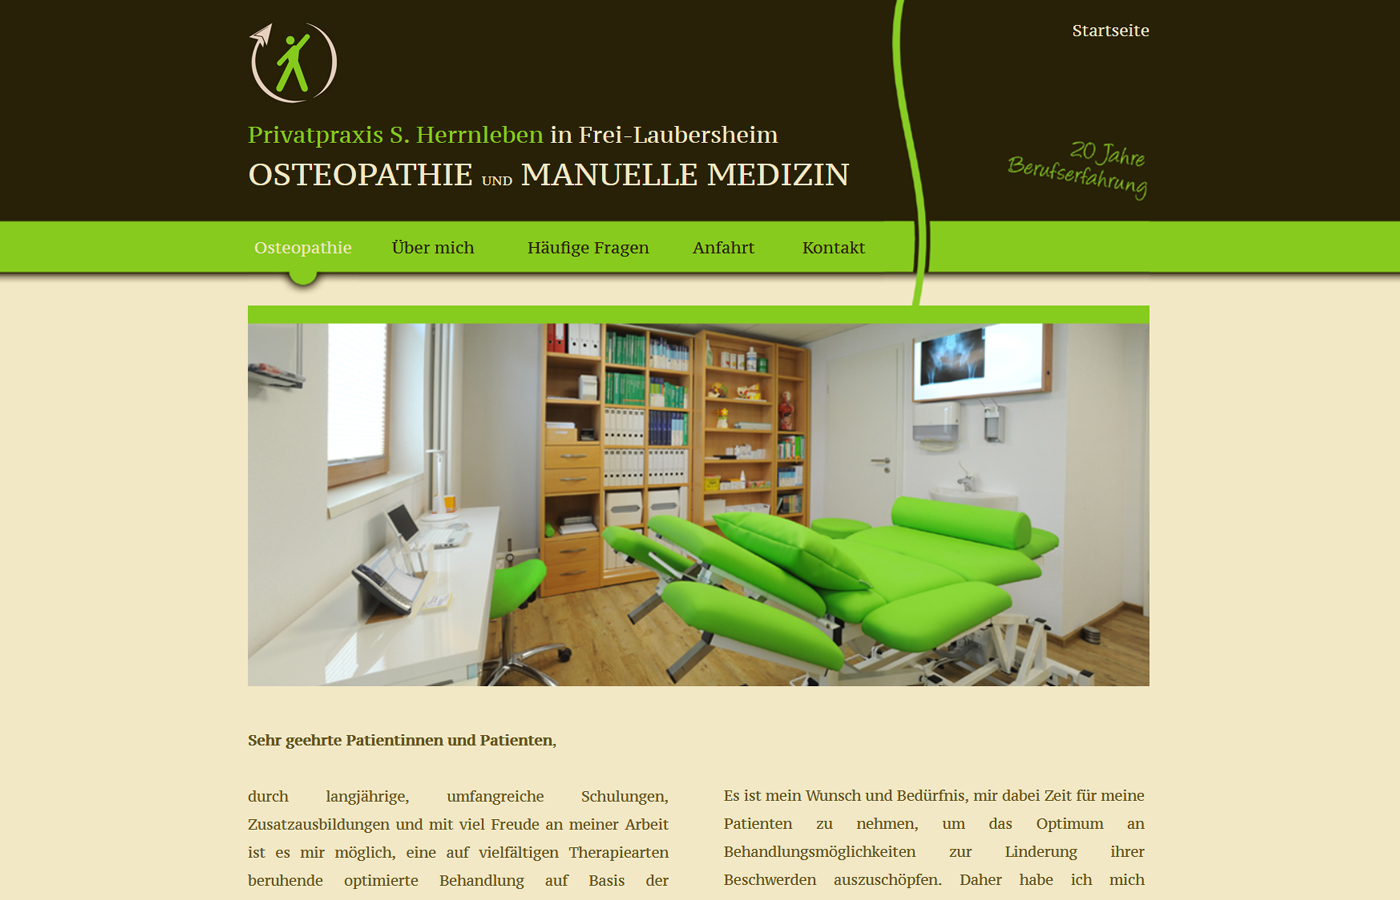 Praxis S. Herrnleben für Osteopathie